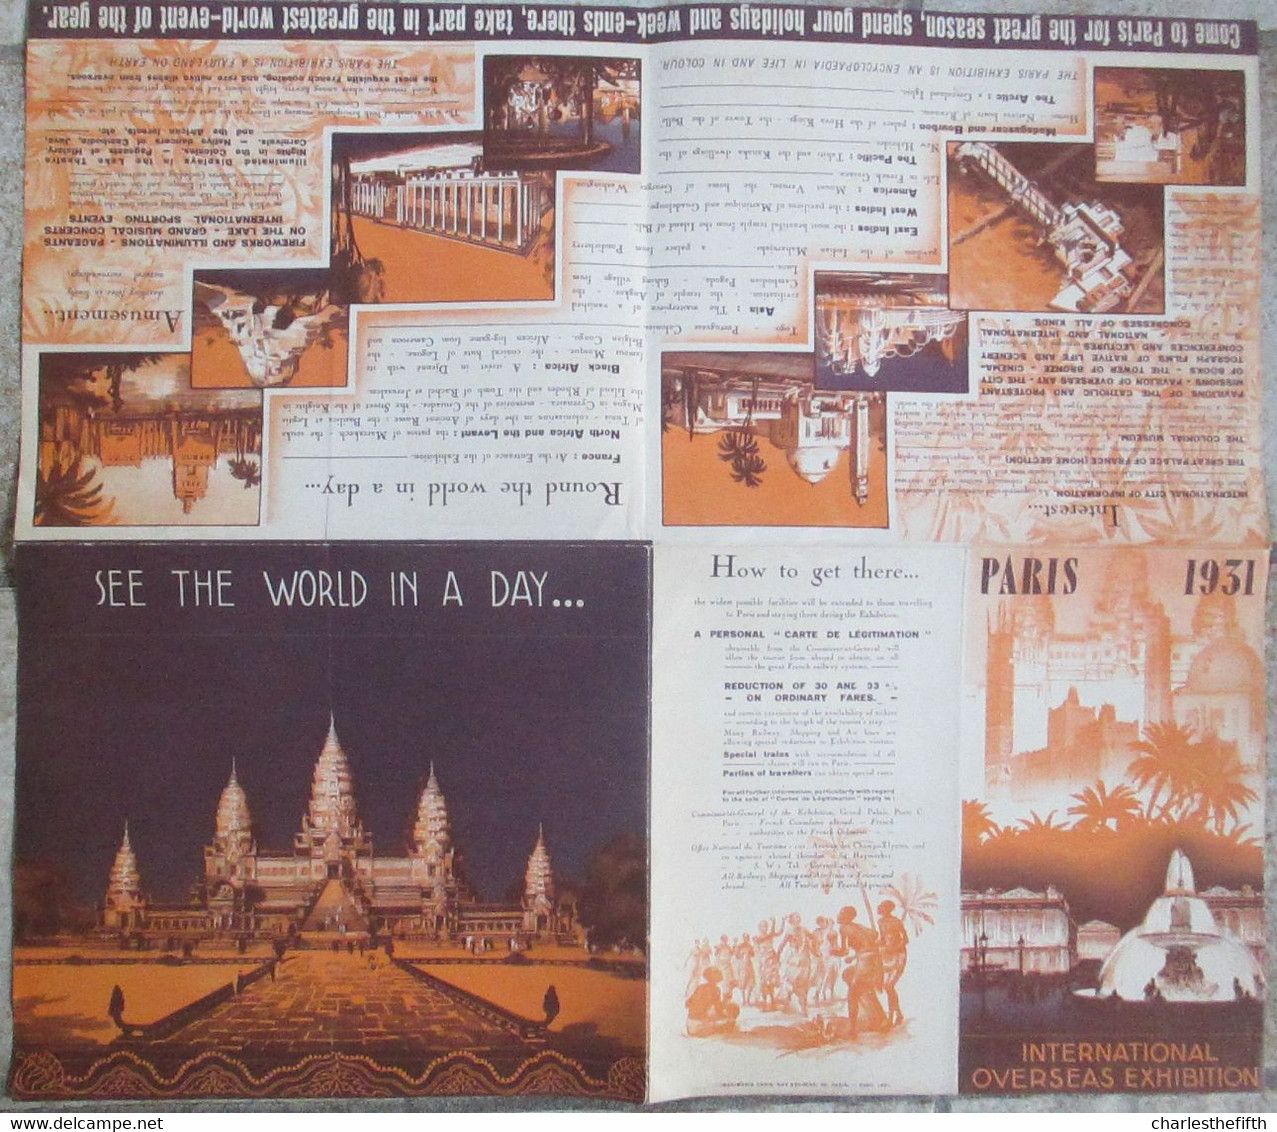 GRANDE BROCHURE EXPOSITION INTERNATIONALE A PARIS EN 1931 - RARE ! - Tourism Brochures